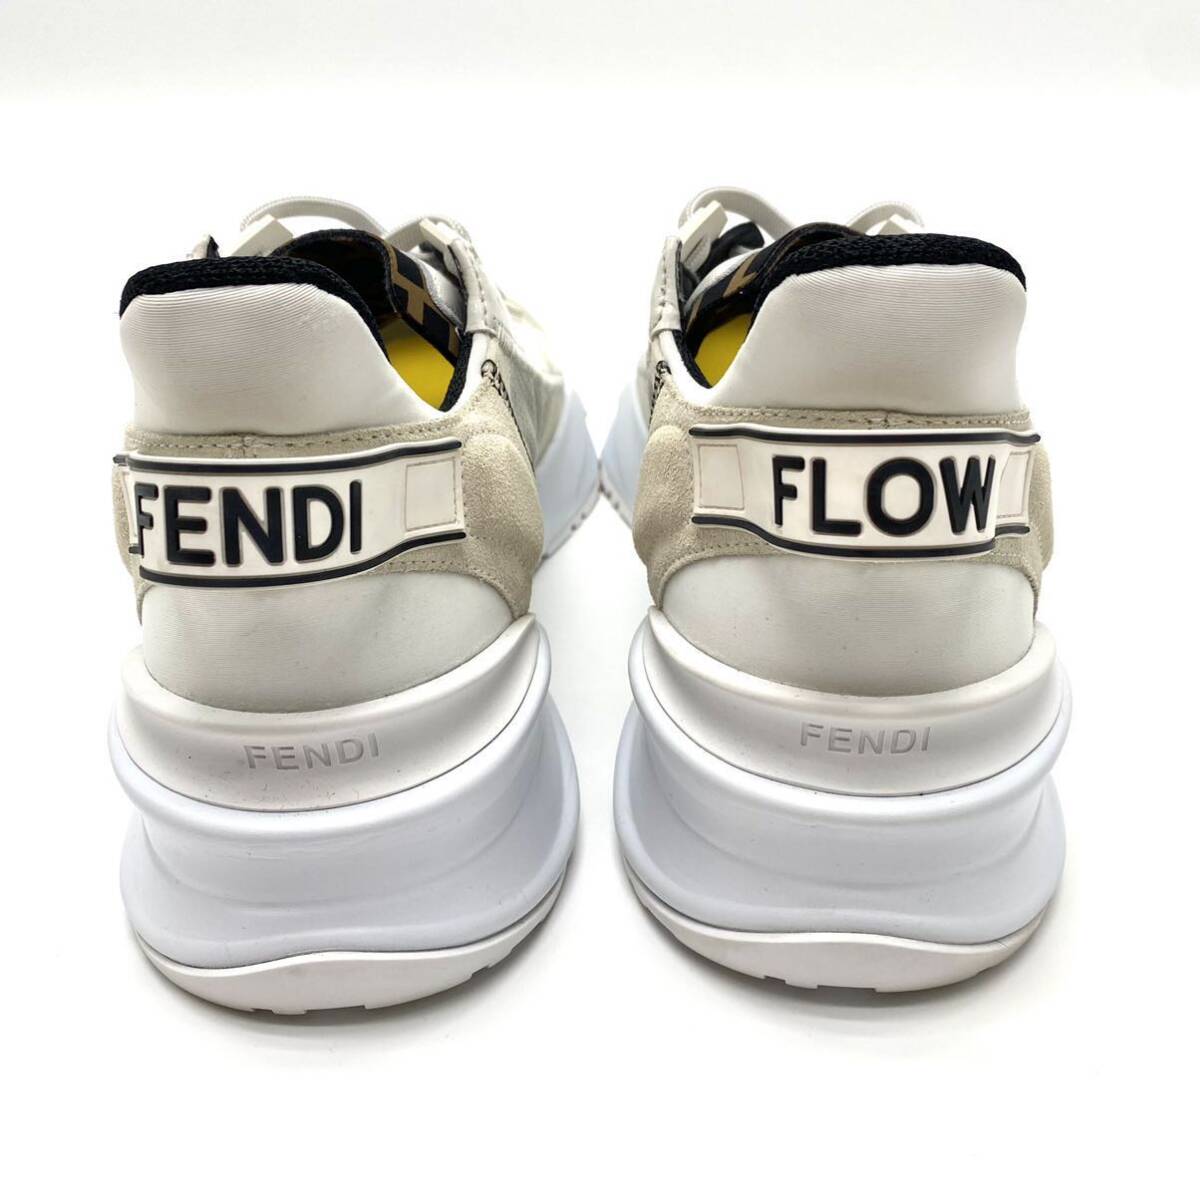 【... красивая вещь / выпускаемая в настоящее время модель) 】FENDI ... FLOW ...  иконка  кроссовки   ... рукоятка  FF лого    бок  ...  белый   белый  мужской  27cm ...